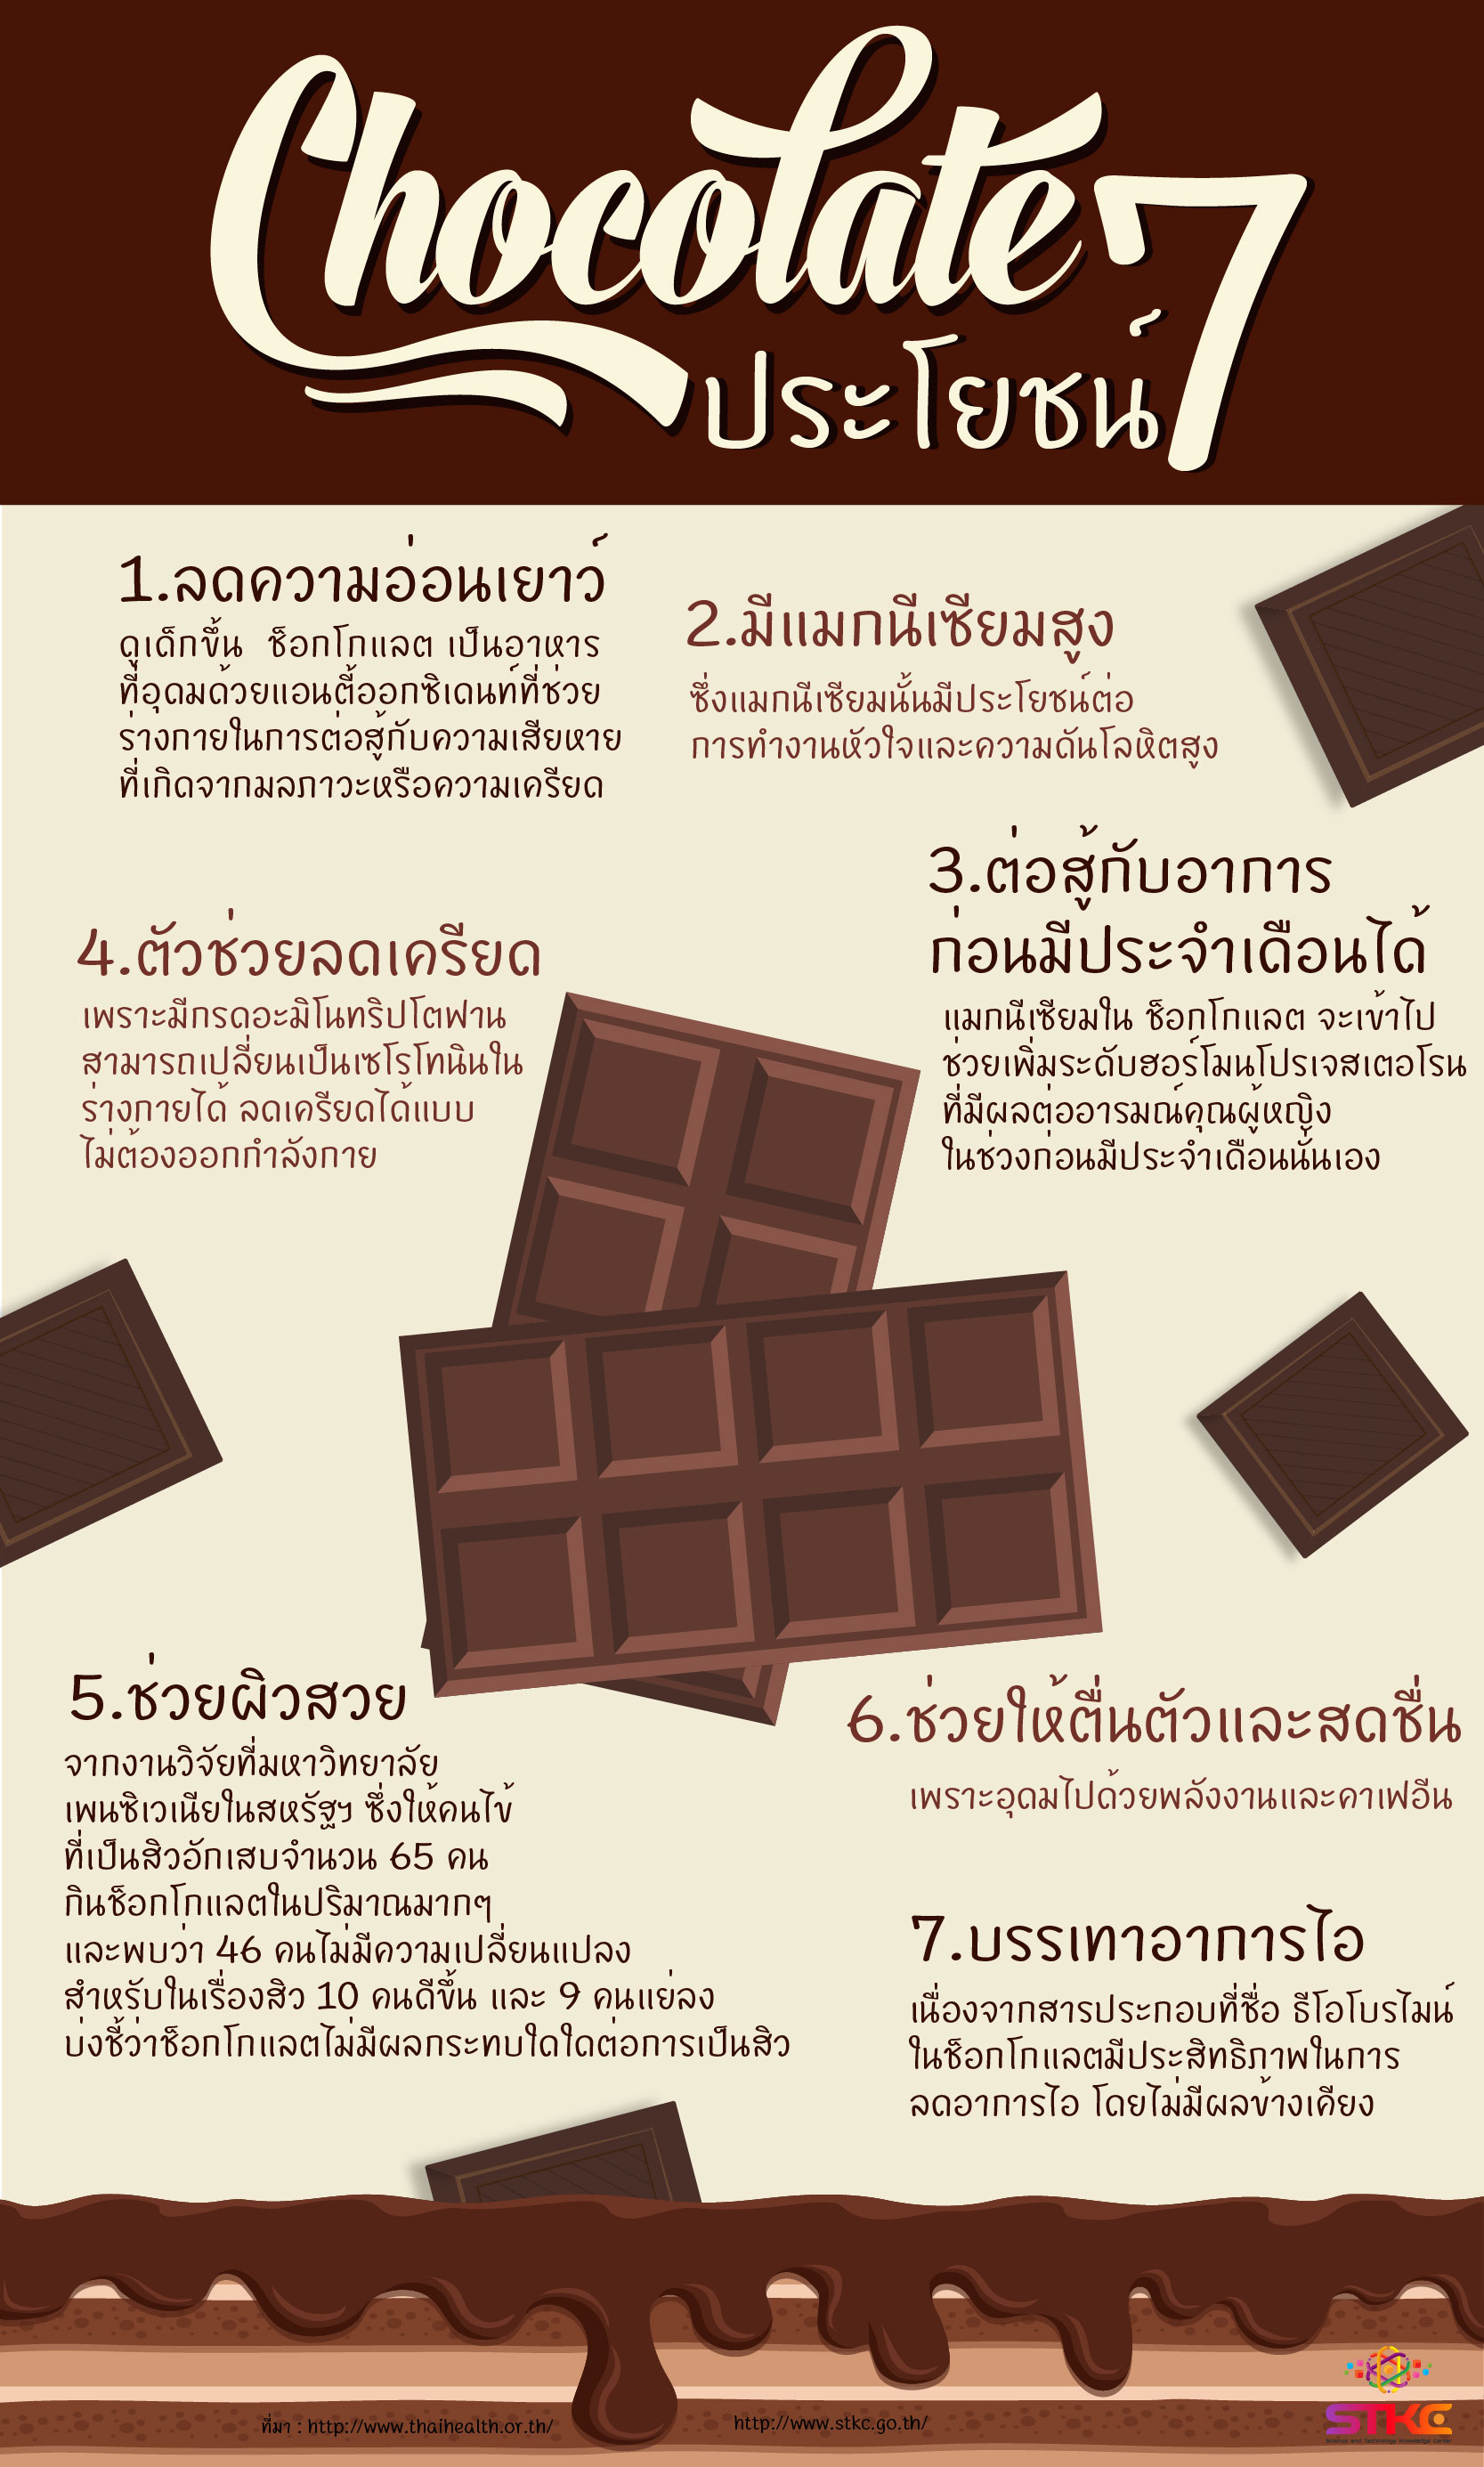 7 ประโยชน์ช็อกโกแลต